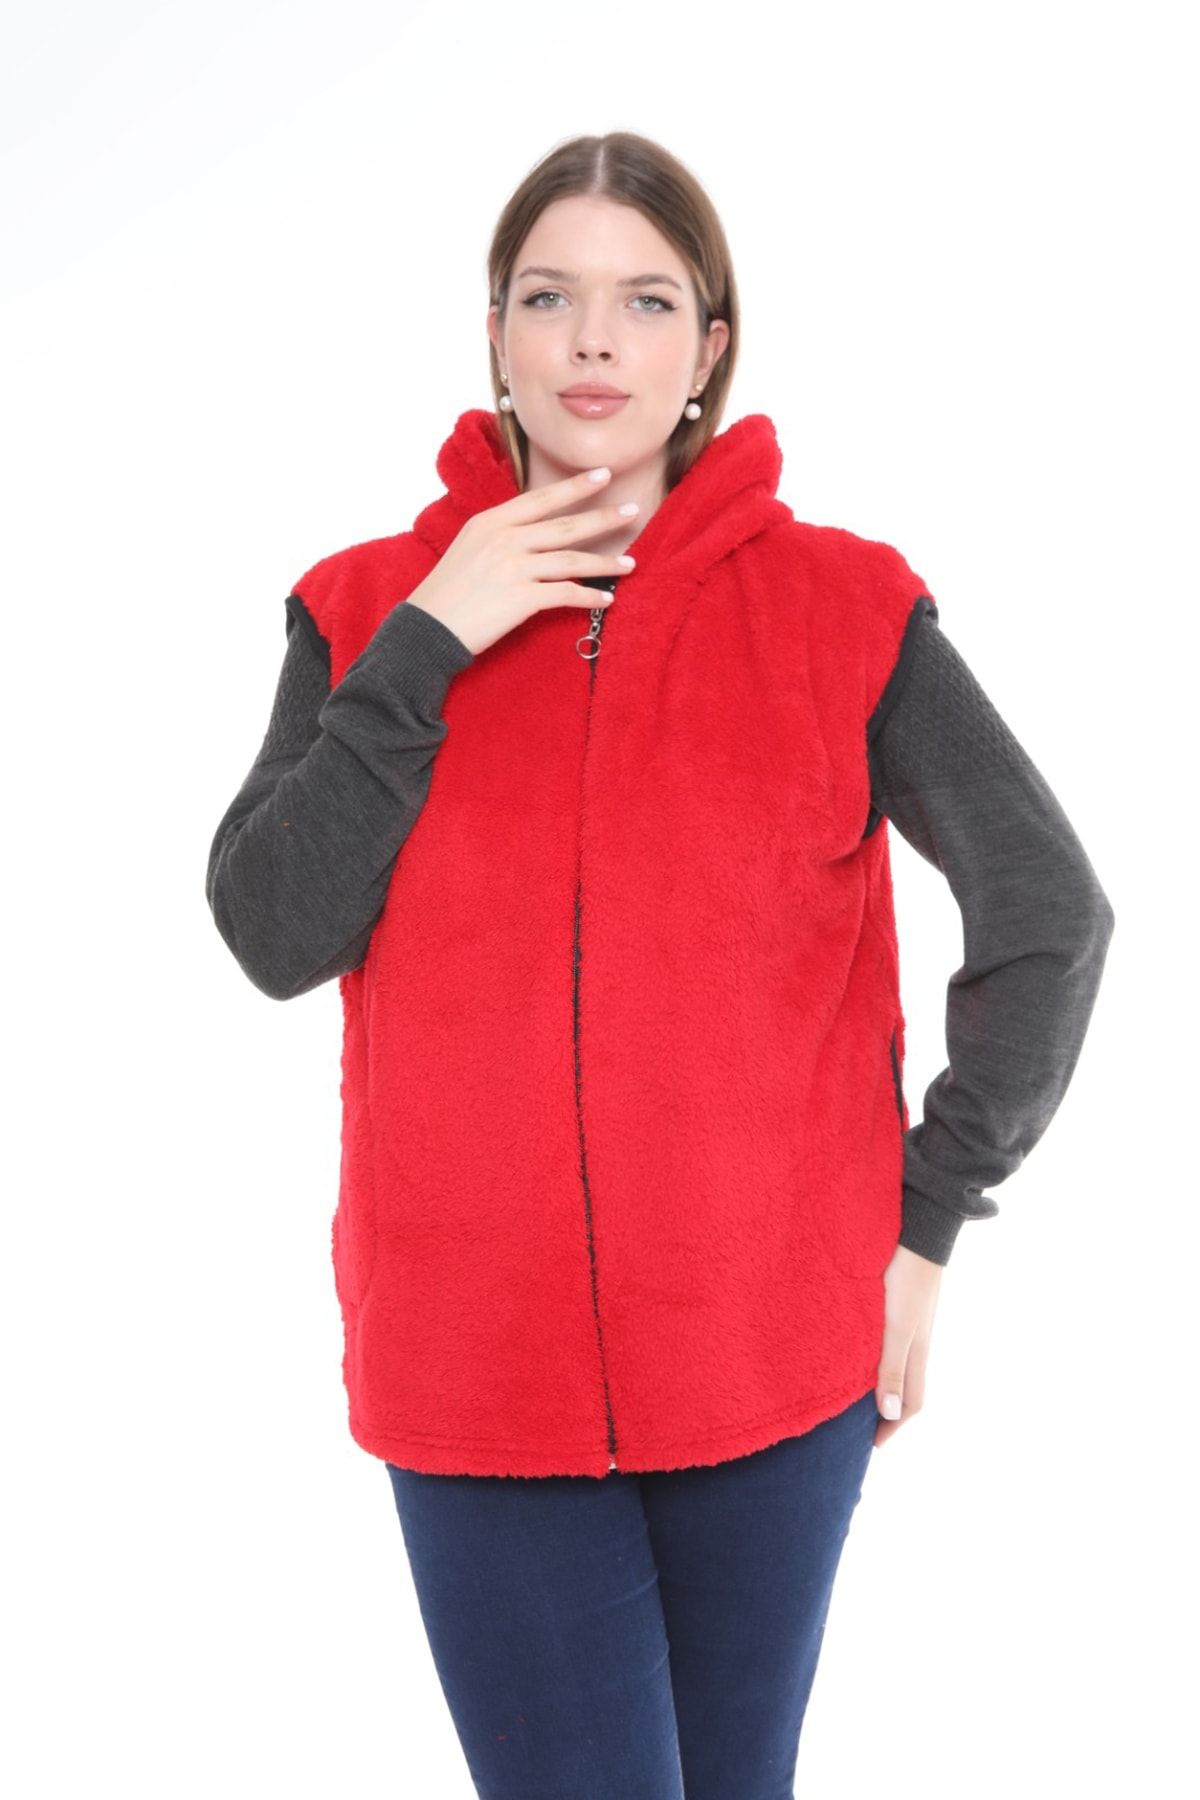 xlargebutik Büyük Beden Kadın Giyik Kırmızı Peluş Polar Yelek Yn